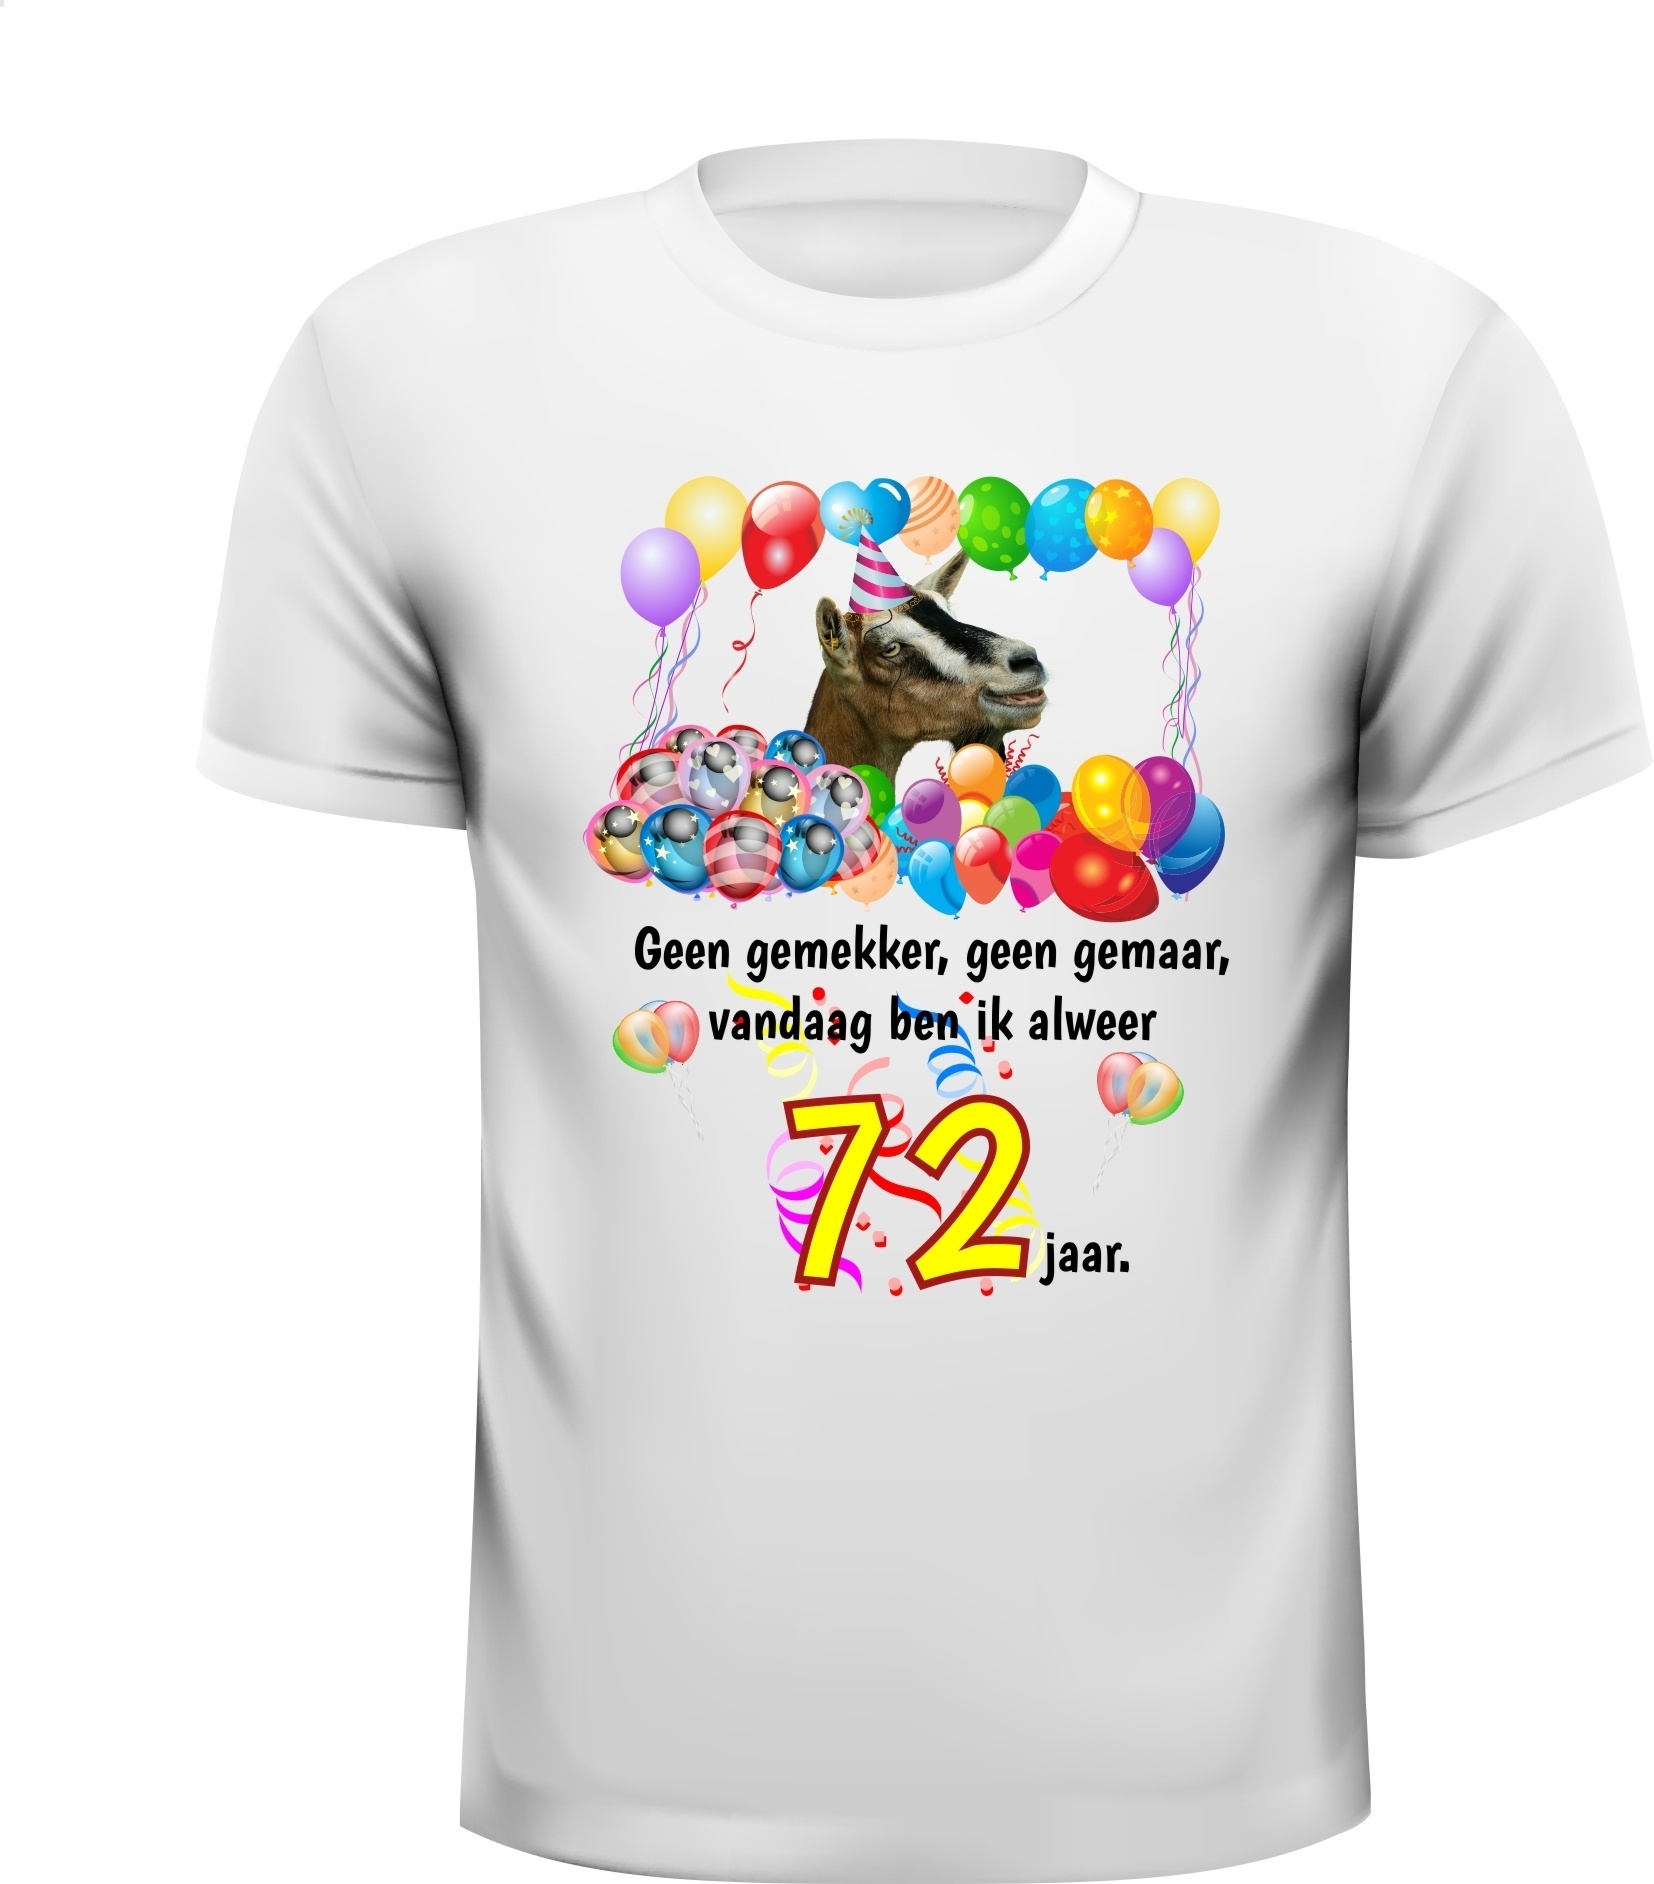 Feestelijk verjaardag shirt vrolijk en kleurrijk 72 jaar met grappige print en tekst